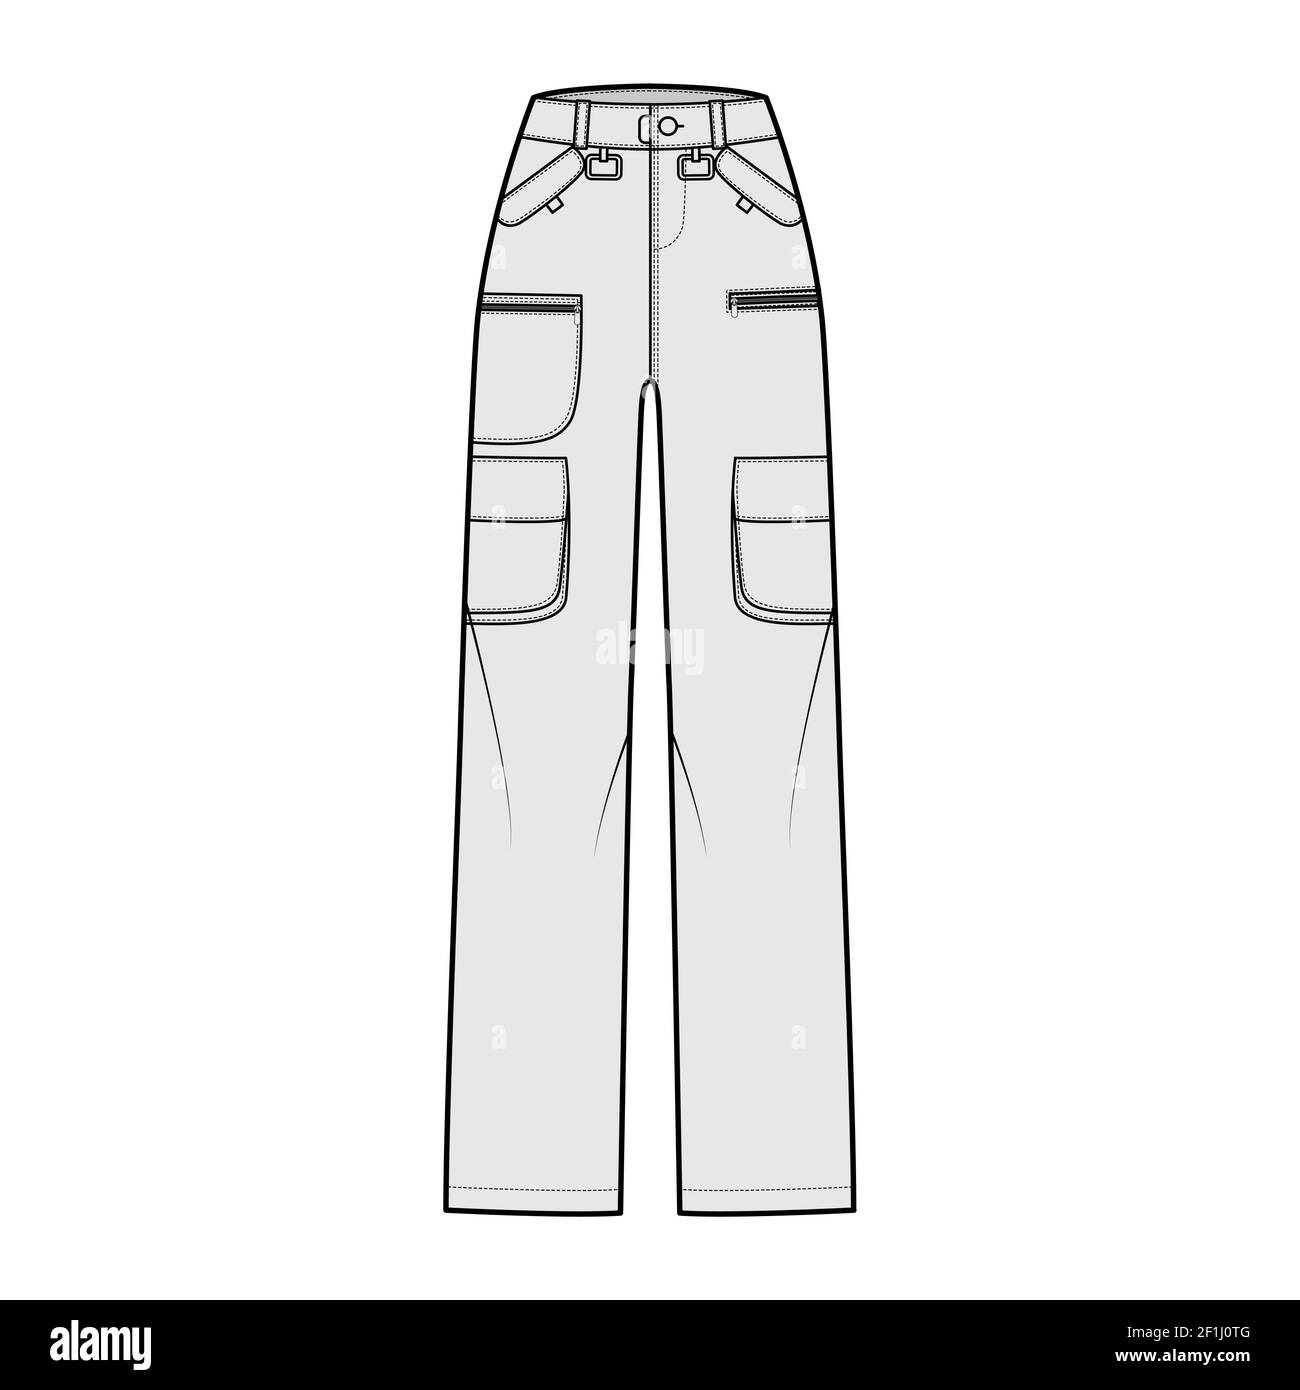 Pantalon de ski illustration technique de la mode avec taille basse, taille  haute, poches plaquées à rabat avec fermeture à glissière, passants de  ceinture, longueurs complètes. Modèle de vêtement plat sur le